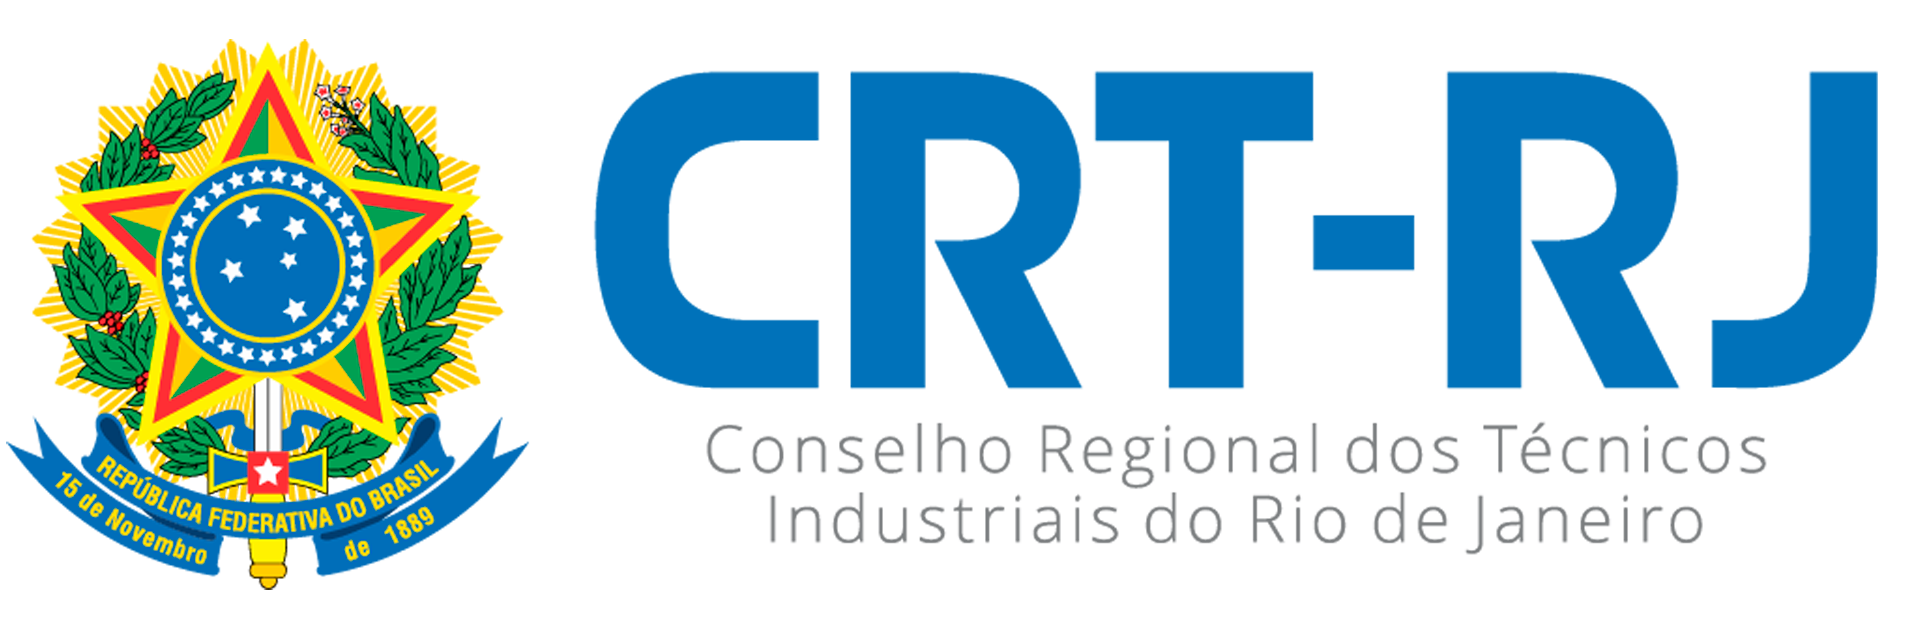 CRT/RJ - Conselho Regional dos Técnicos Industriais do Estado do Rio de Janeiro